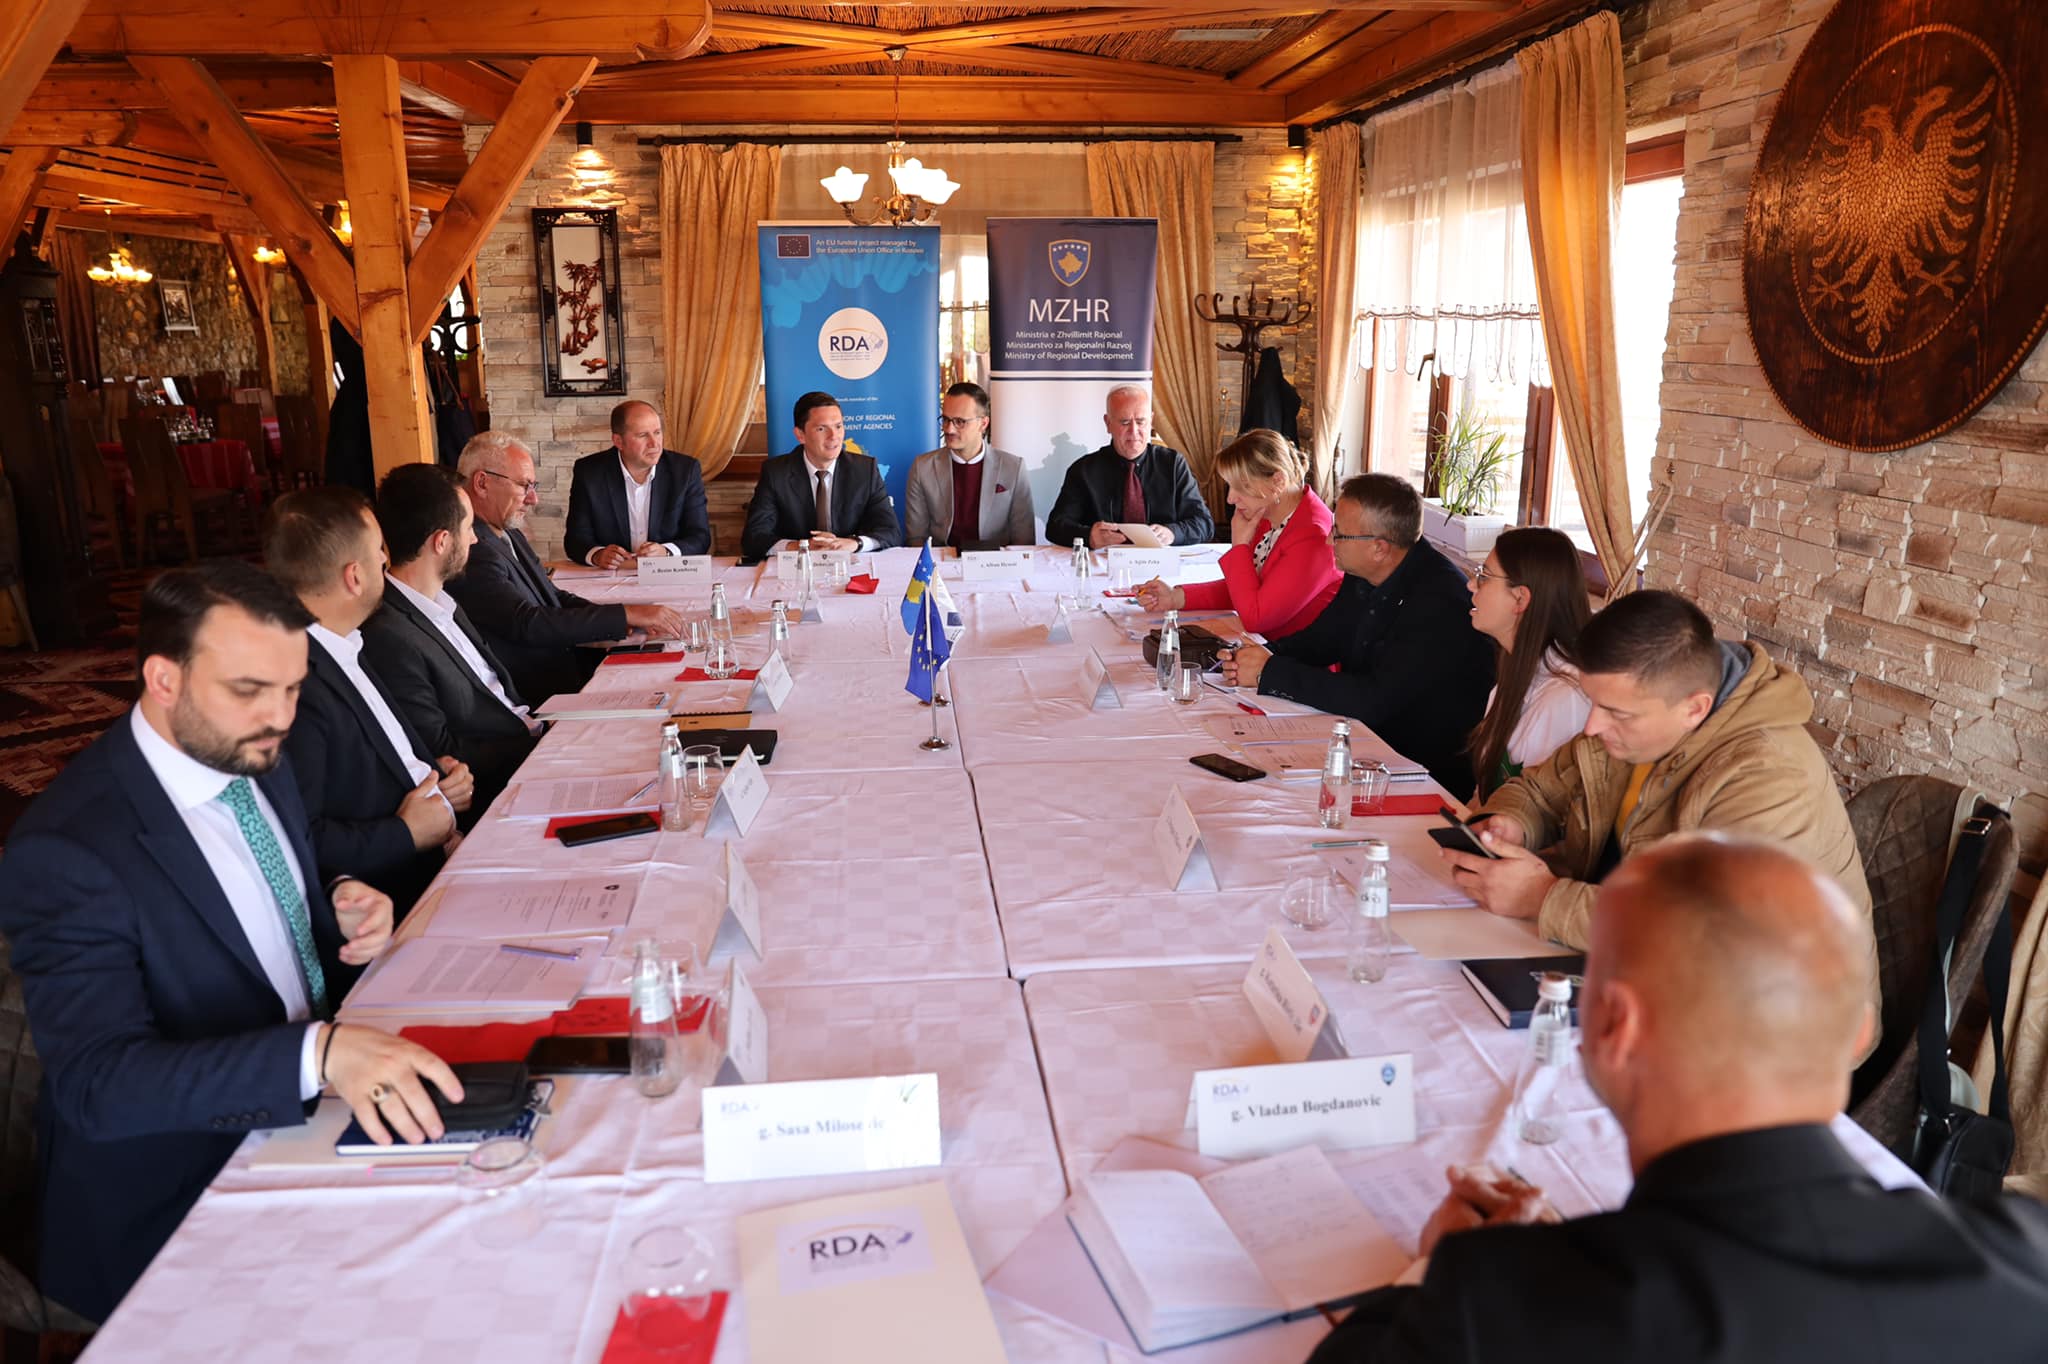 Agjencia për Zhvillim Rajonal - Lindje dhe Ministria e Zhvillimit Rajonal sot kanë realizuar tryezën e rrumbullakët me titull: “Partneriteti në zbatimin e politikave të zhvillimit rajonal në Republikën e Kosovës”